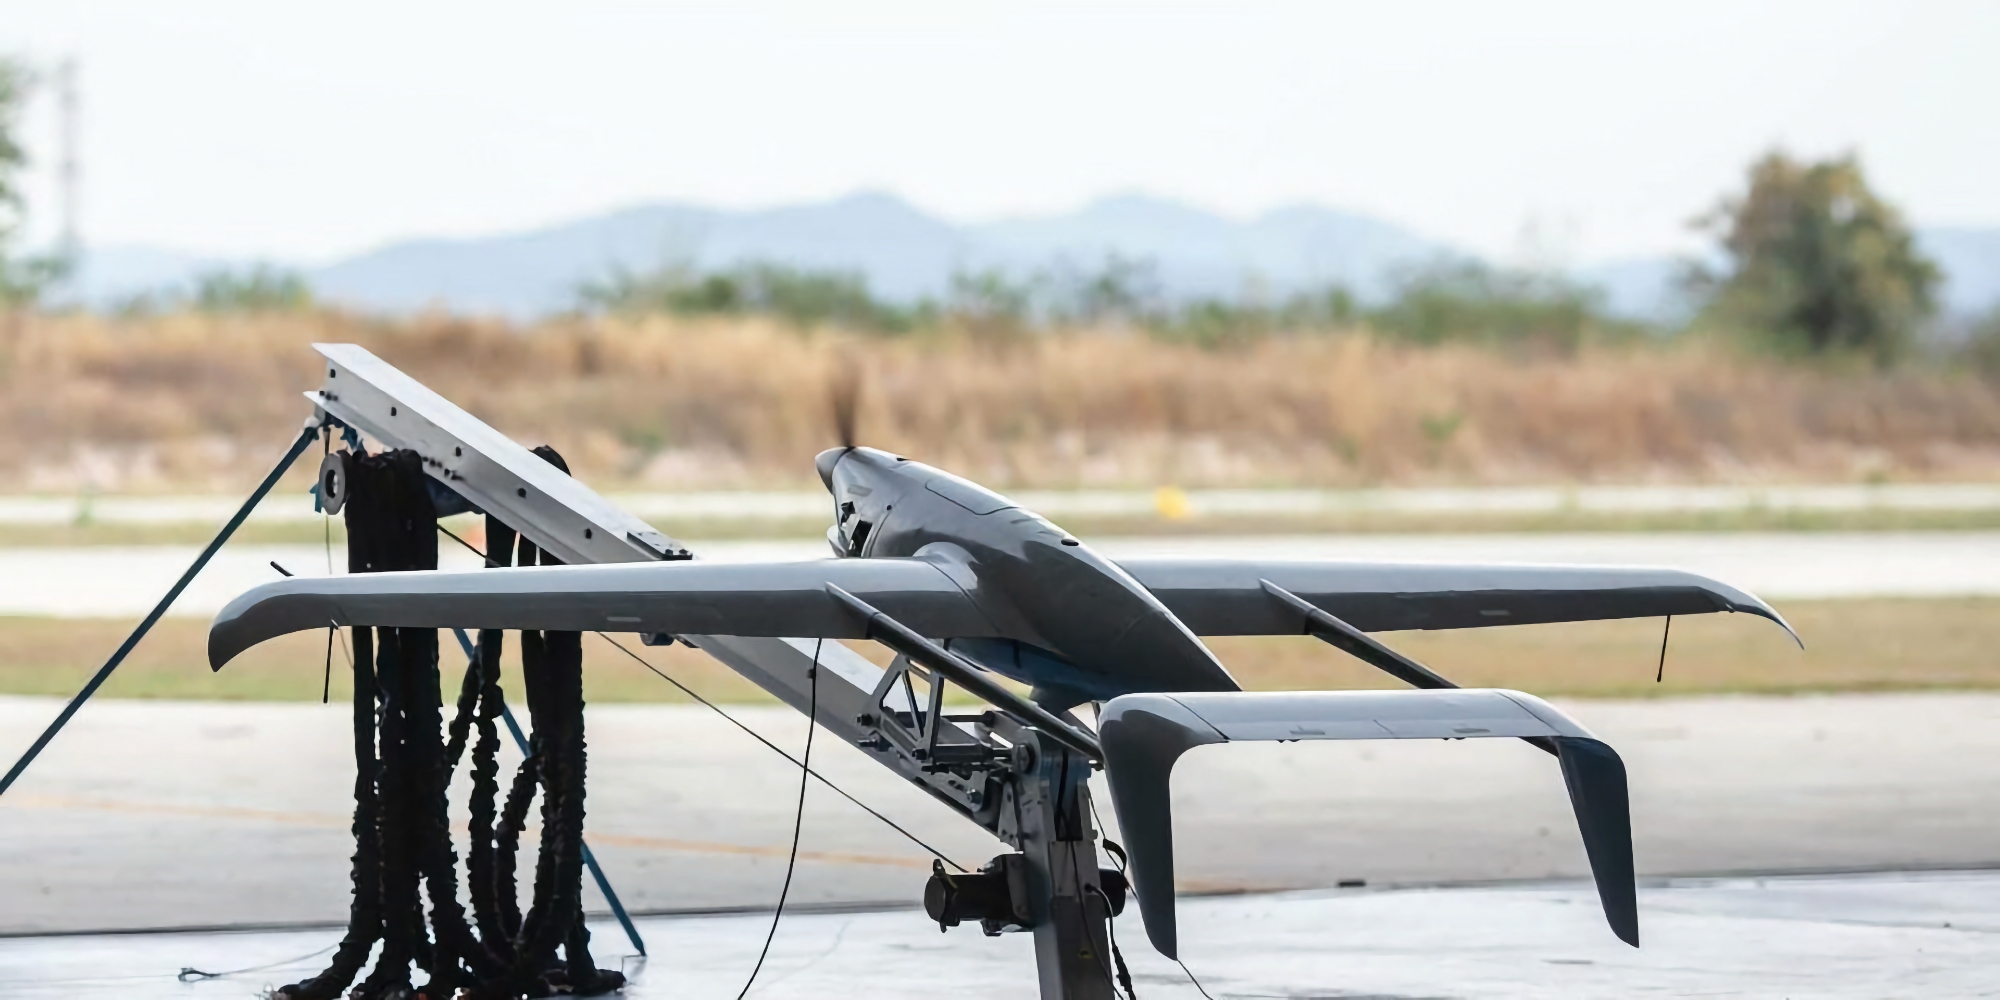 UNITED24 übergibt Raybird-3 UAV an die AFU, die bis zu 2.500 km weit fliegen und bis zu 28 Stunden in der Luft bleiben kann